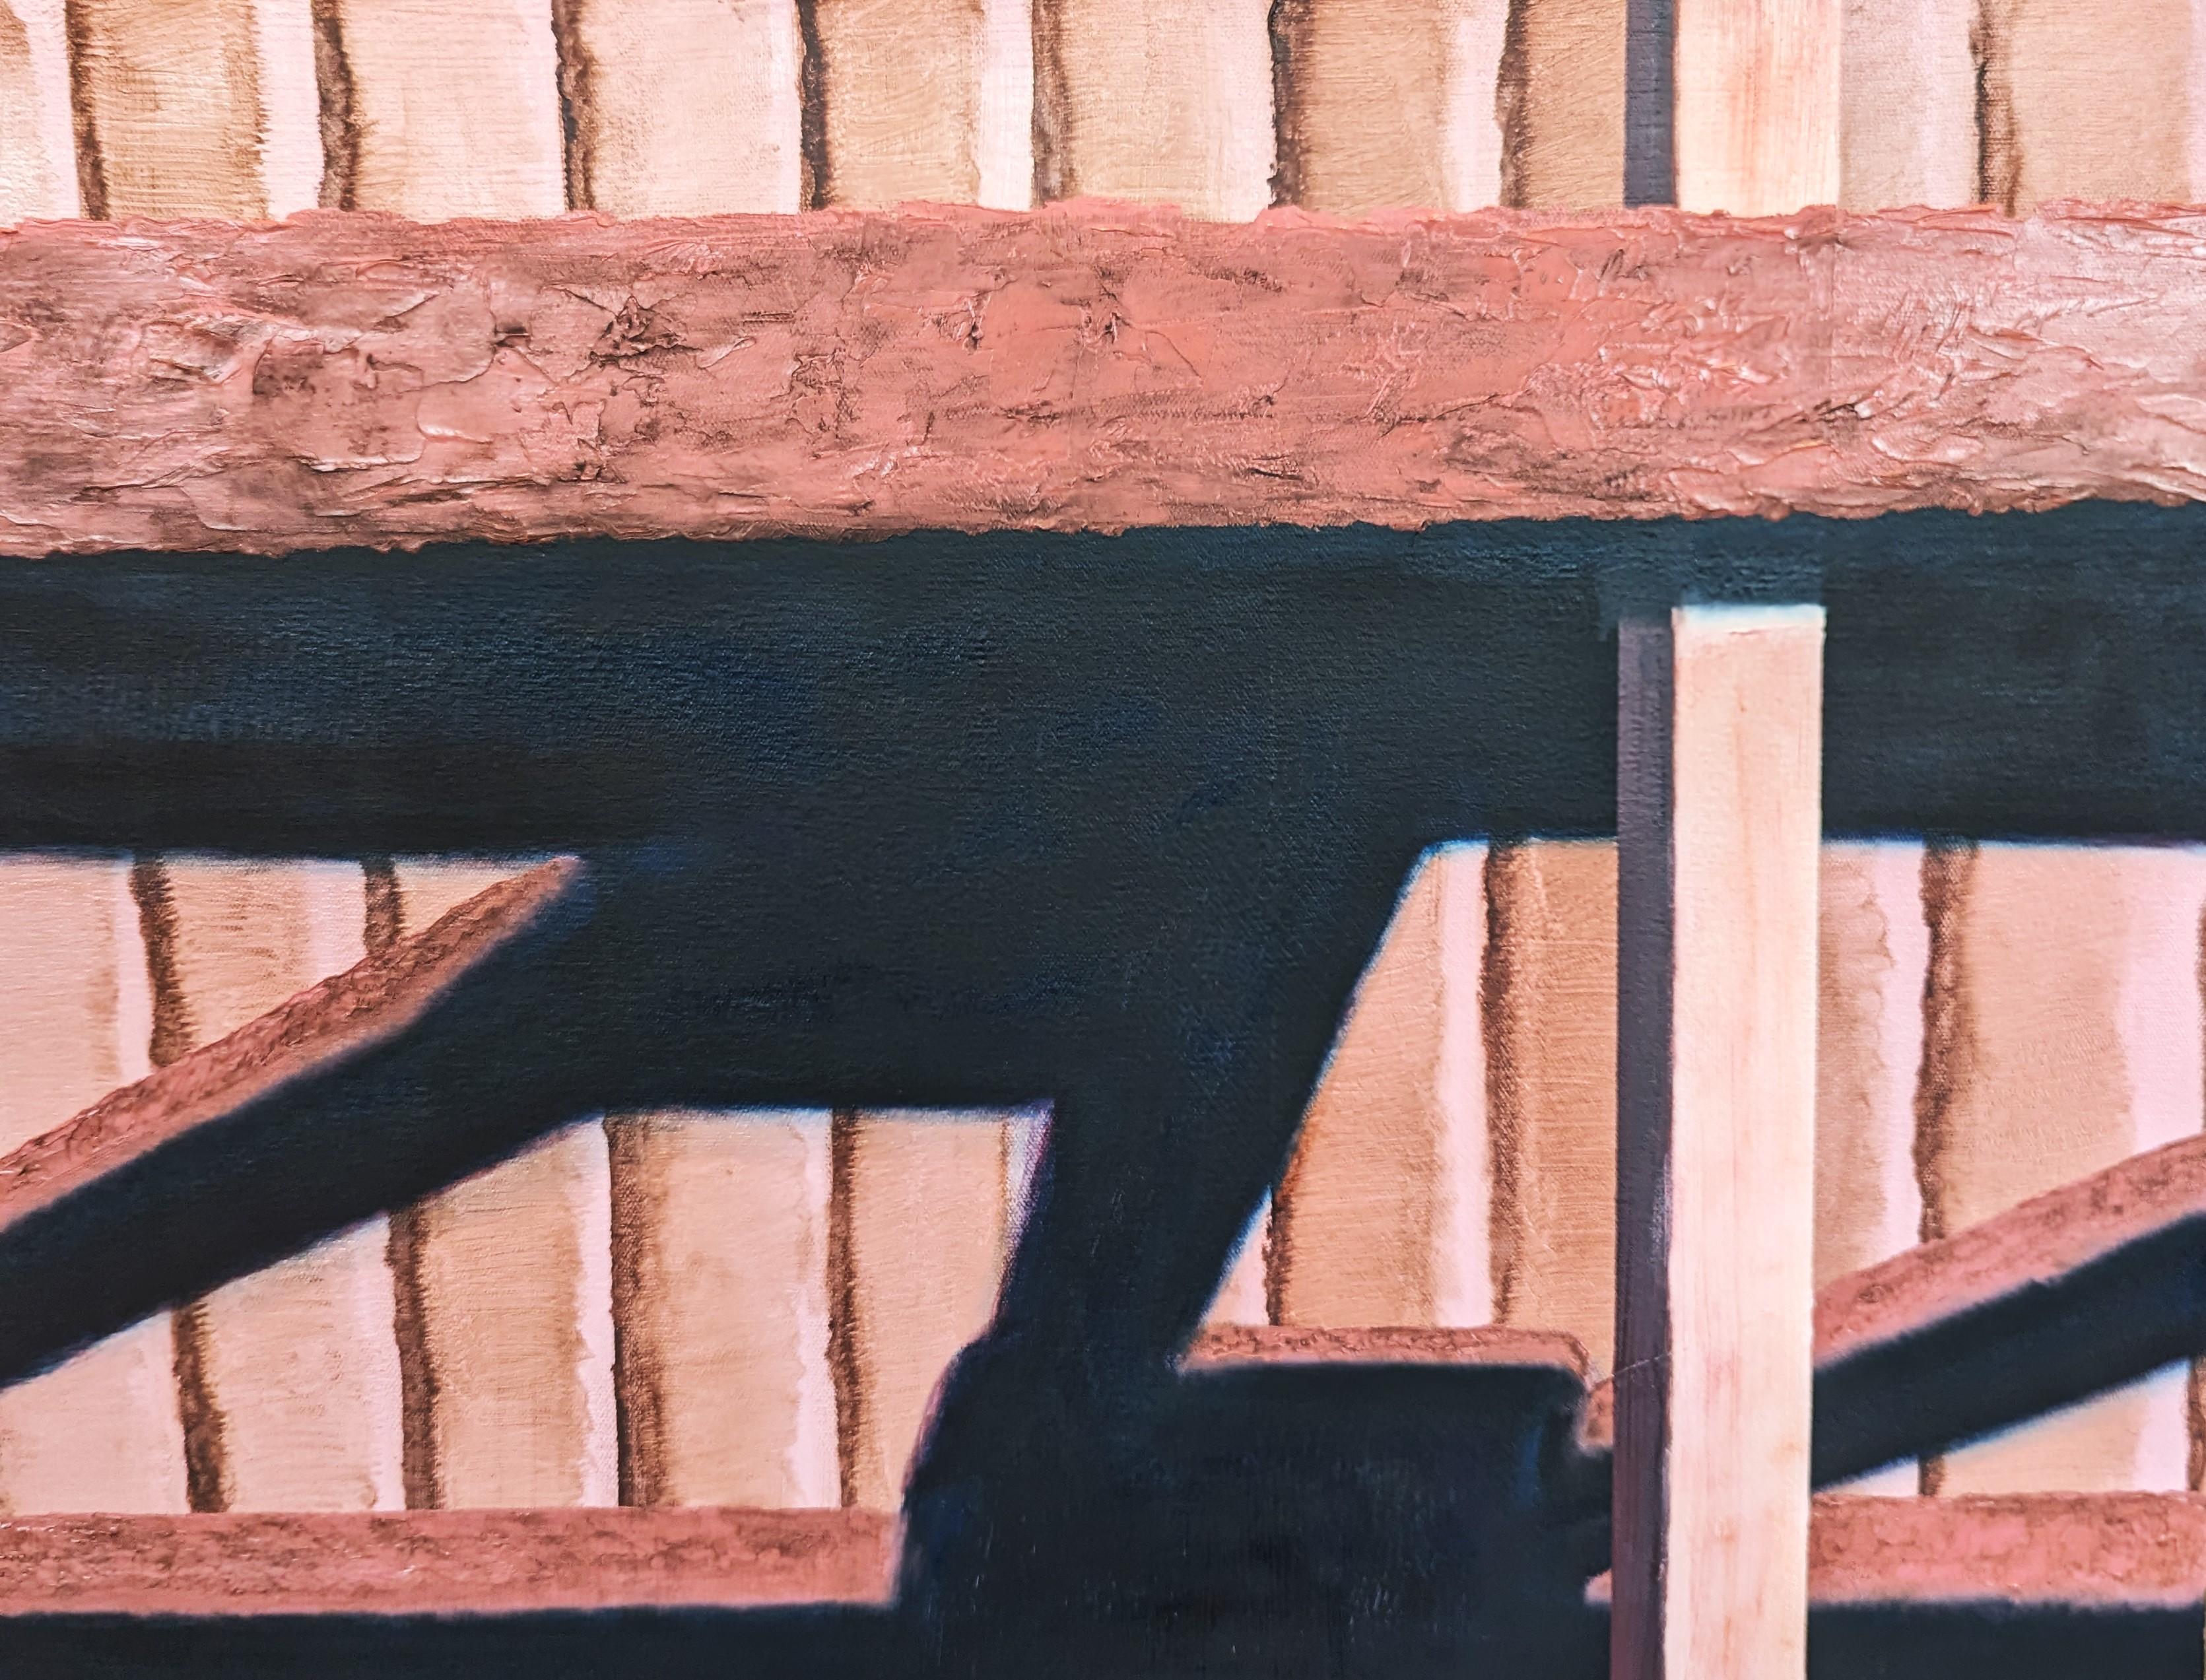 Neutral getönte realistische Malerei des zeitgenössischen Künstlers Tommy Taylor. Das Werk zeigt eine Nahaufnahme eines schattigen Holzzauns. Rückseitig signiert, betitelt und datiert. Derzeit ungerahmt, aber Optionen sind verfügbar. 

Biografie des